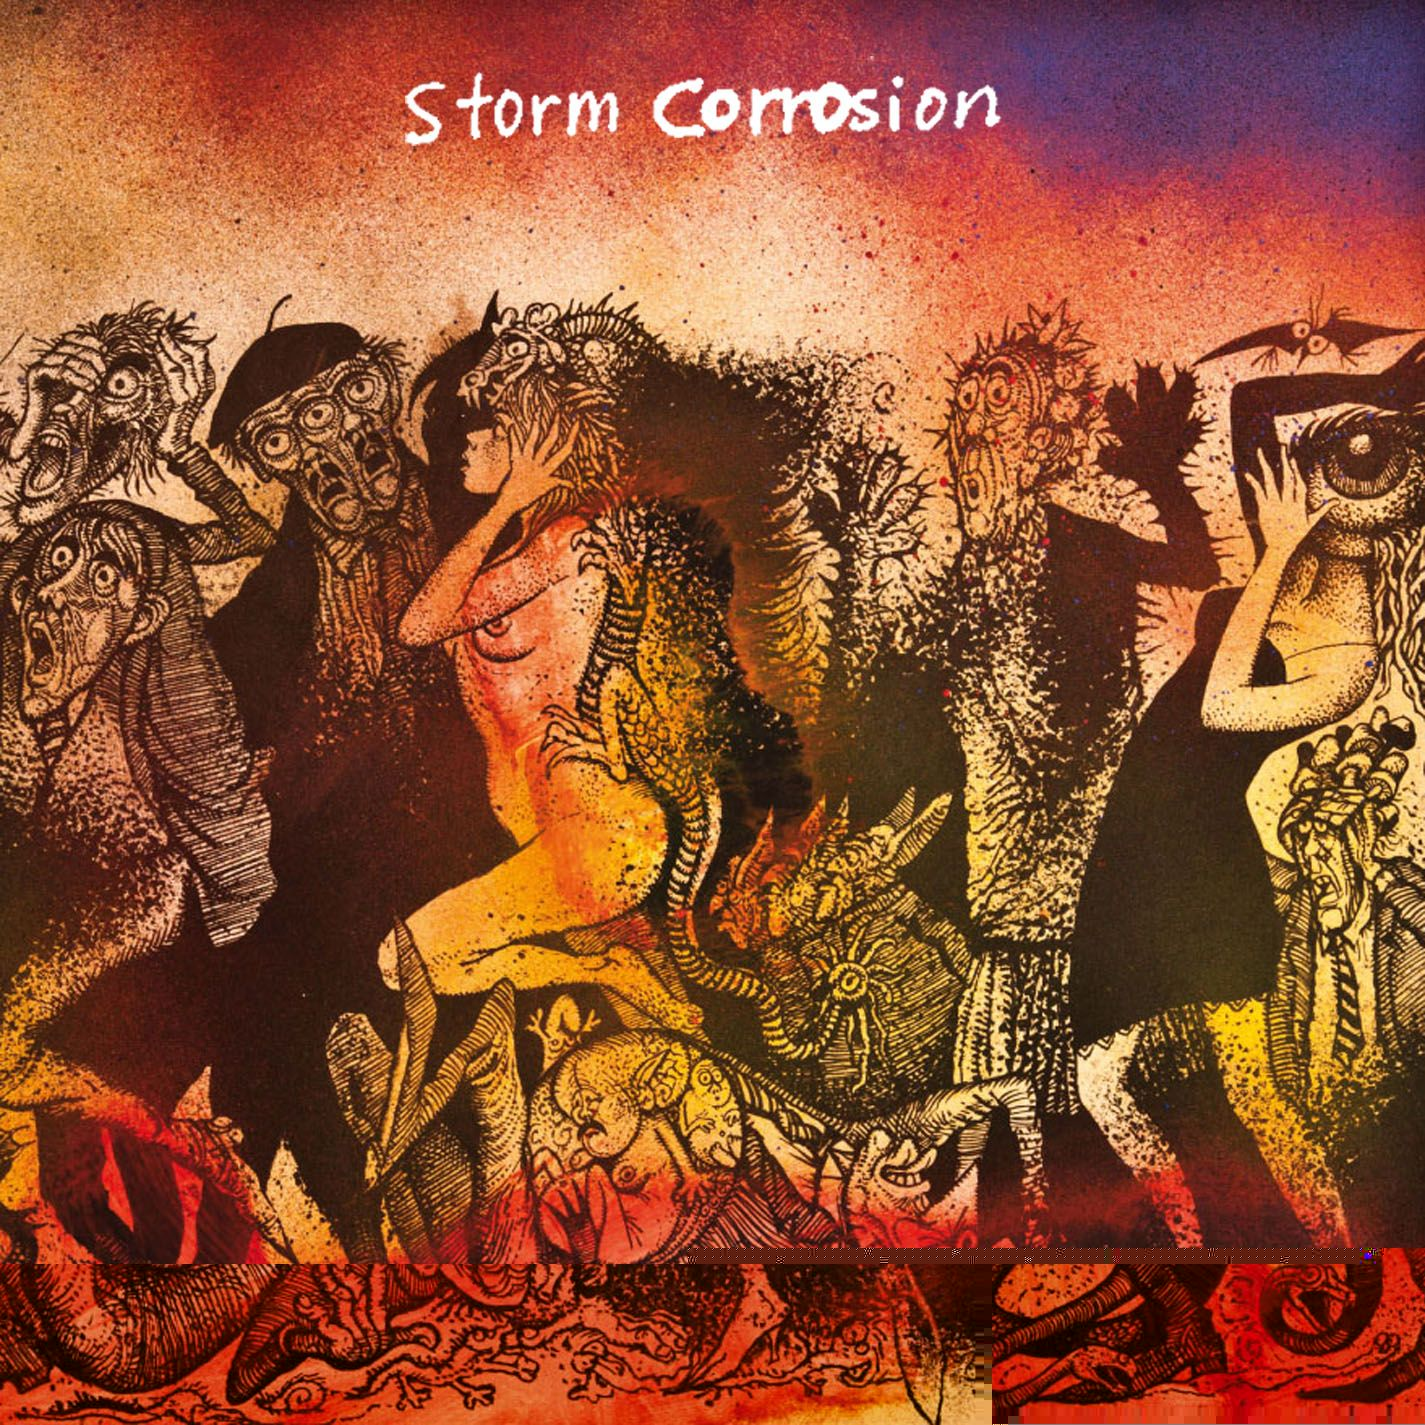 Обложка альбома «Storm Corrosion» (Стивена Уилсона и Микаэля Окерфельдта, 2012)